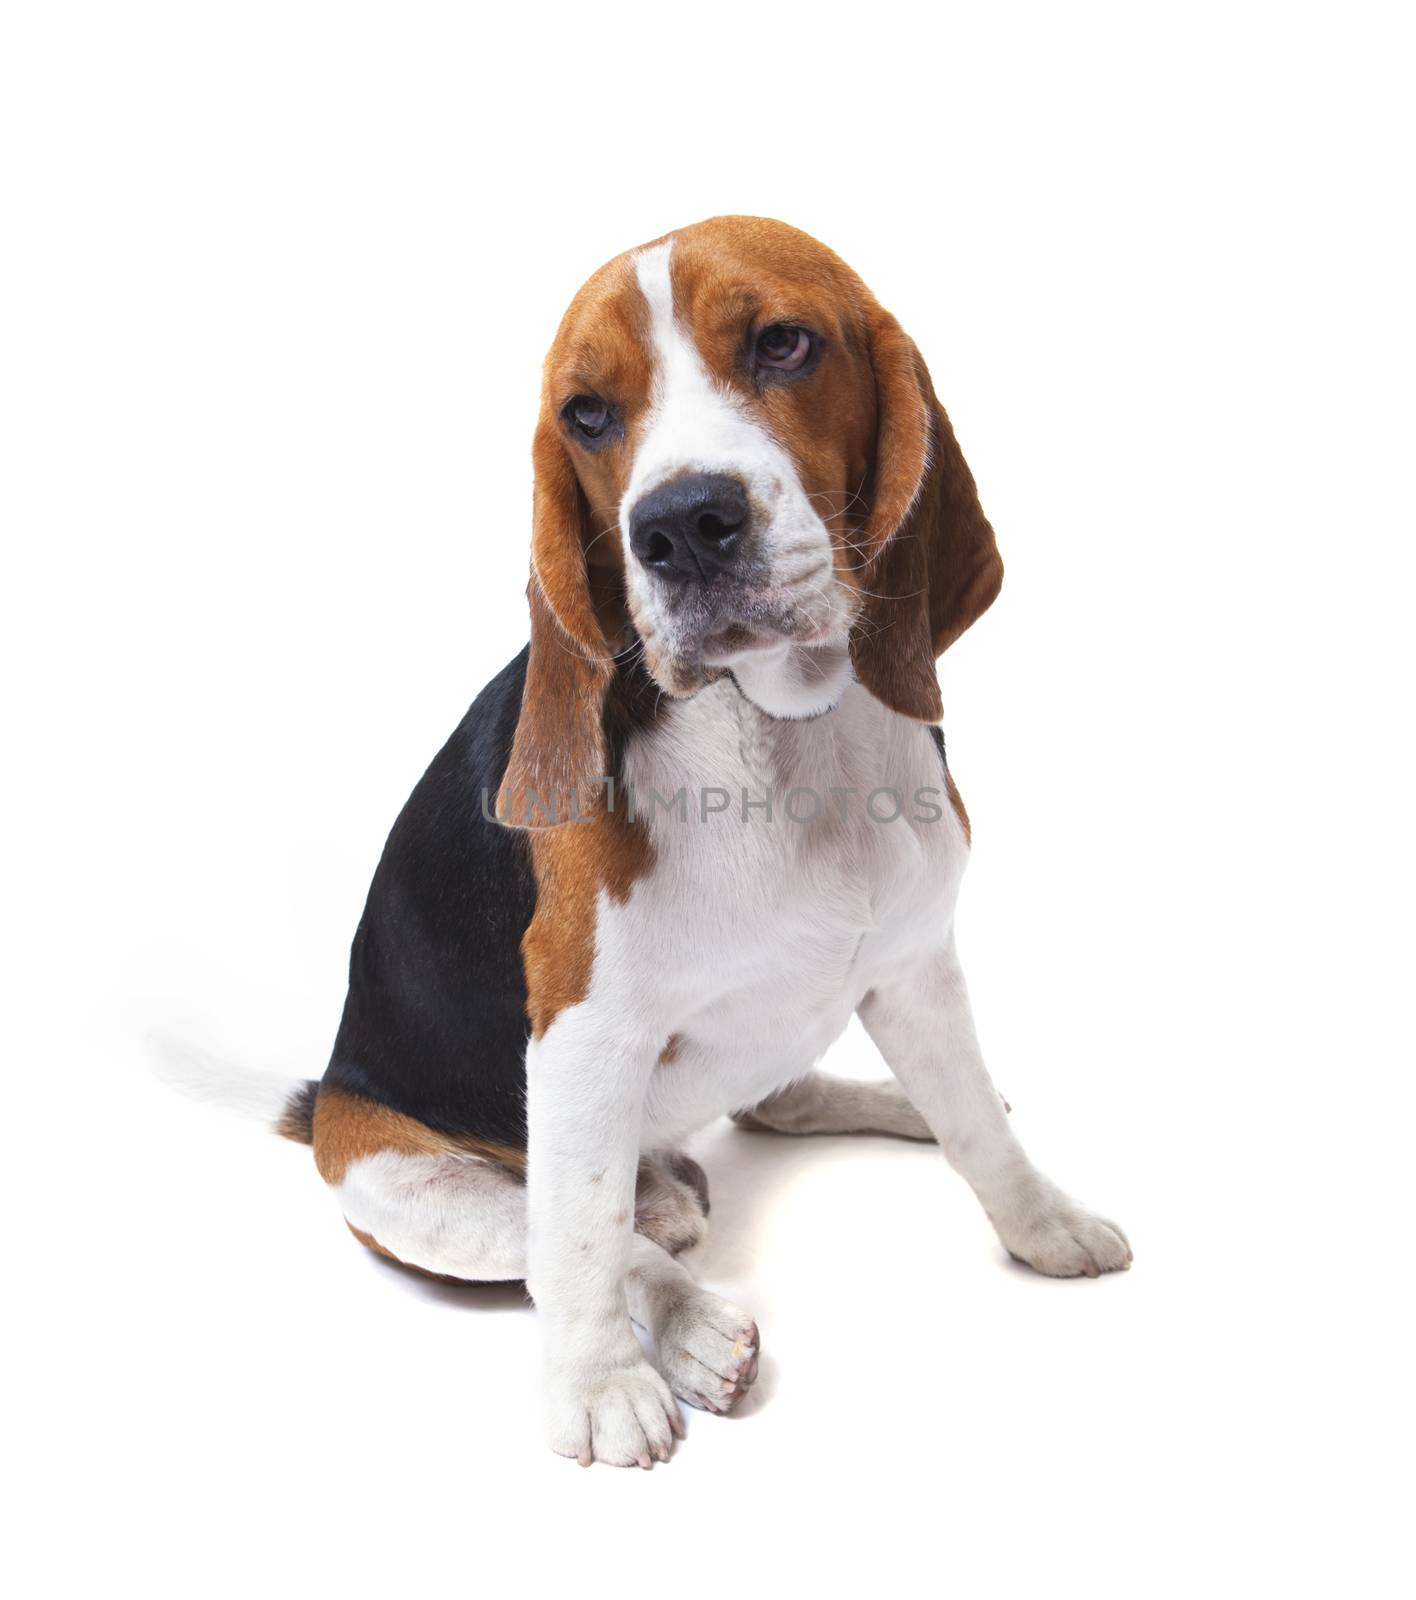 face of beagle dog on white background  by khunaspix